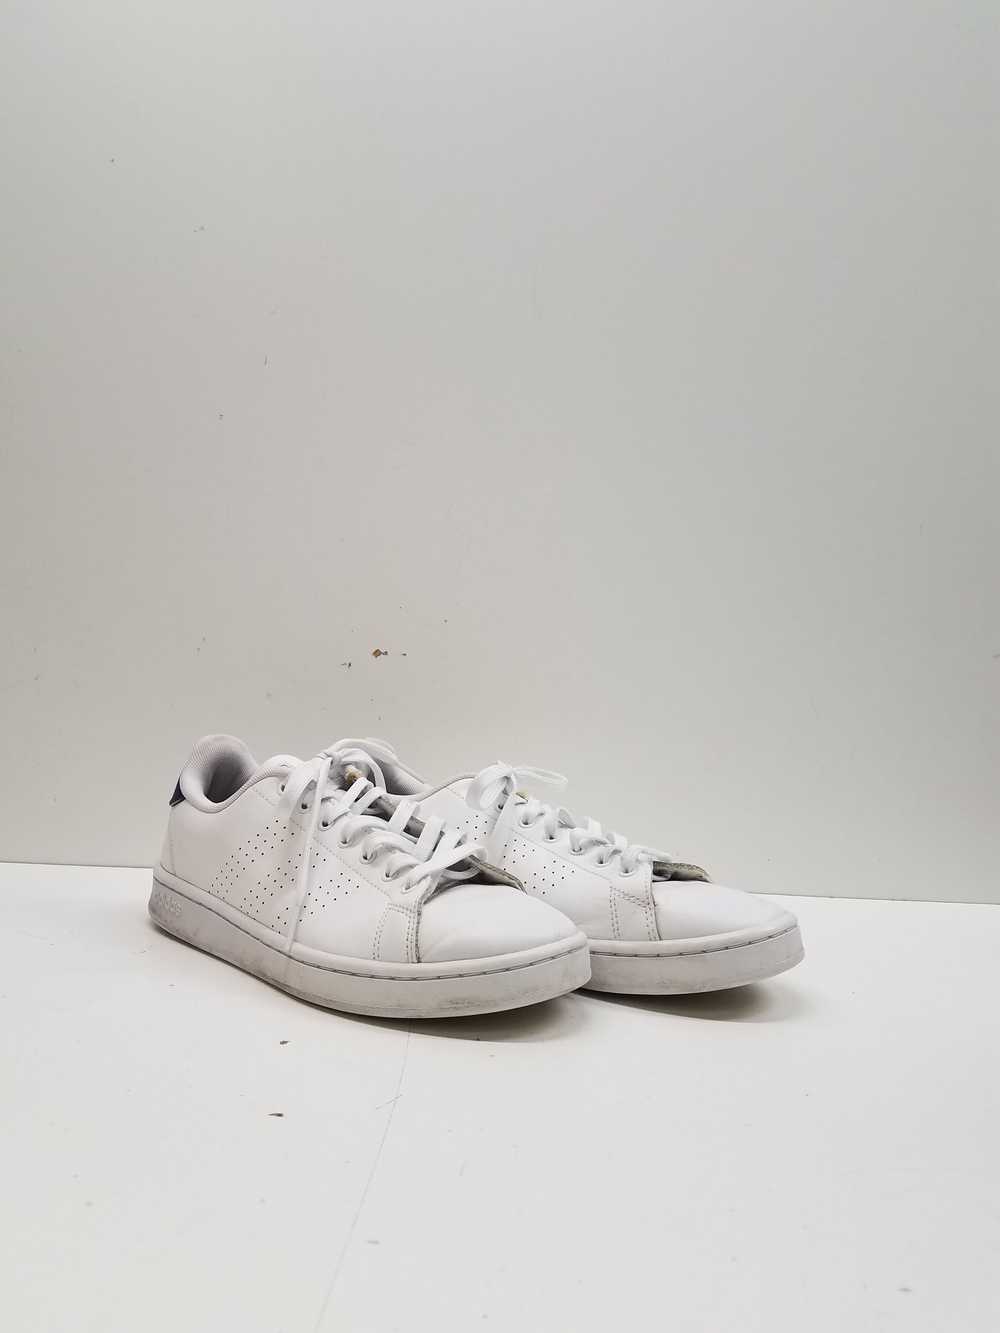 Adidas Advantage Shoes Cloud White Men's Size 9.5 - image 3